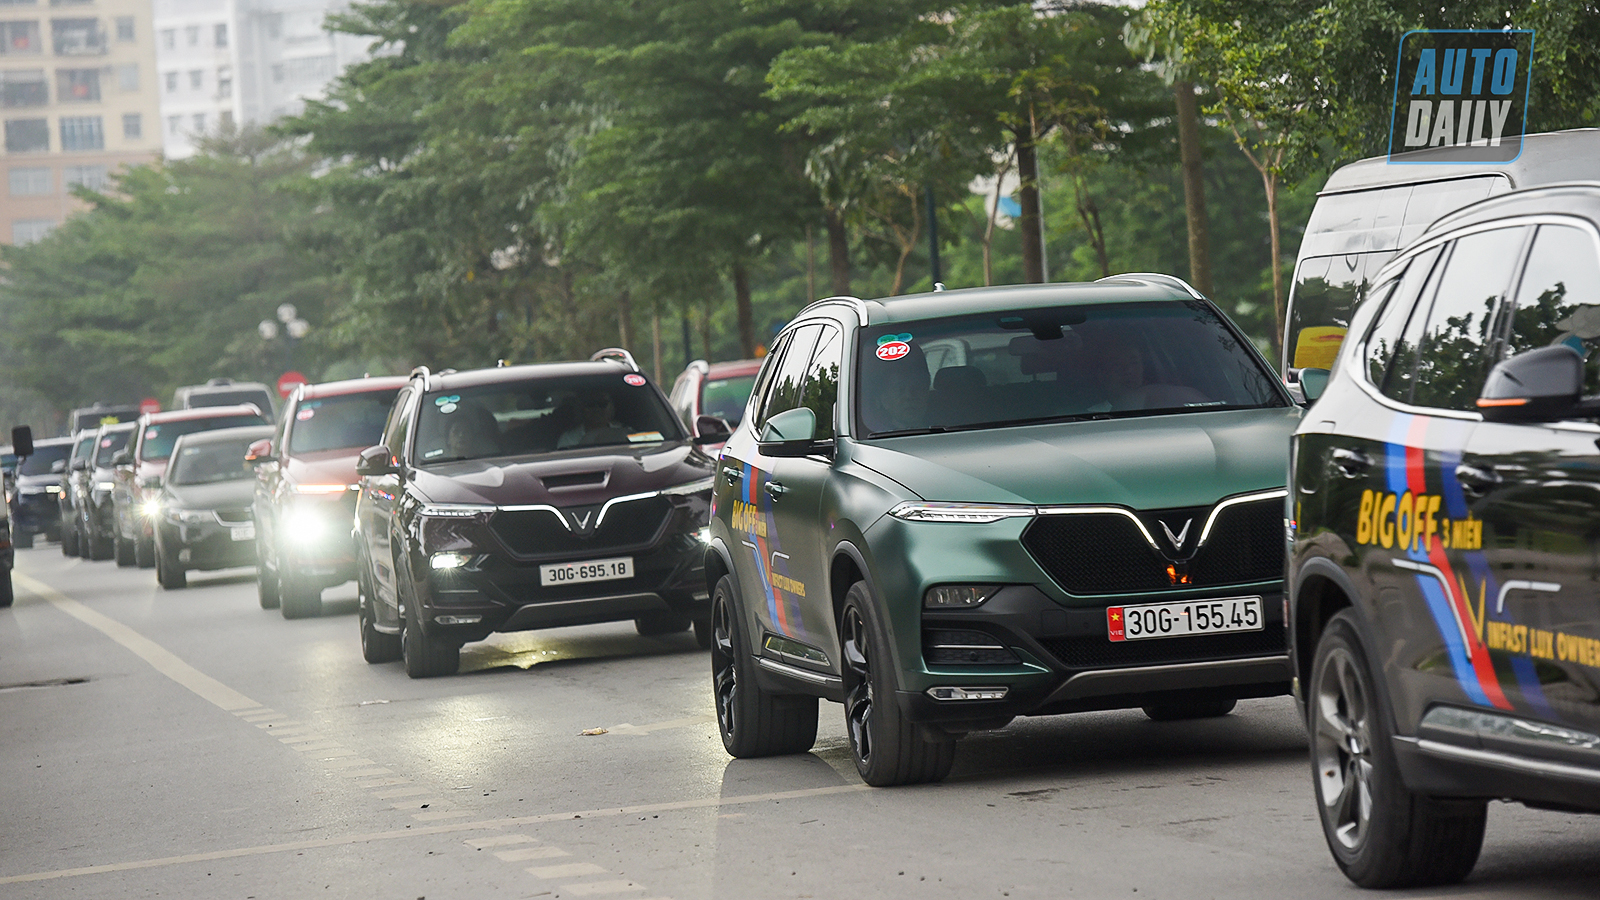 Chùm ảnh gần 60 xe VinFast Lux tại Hà Nội xuất phát Offline 3 miền tại Hội An dsc-6354-copy.jpg